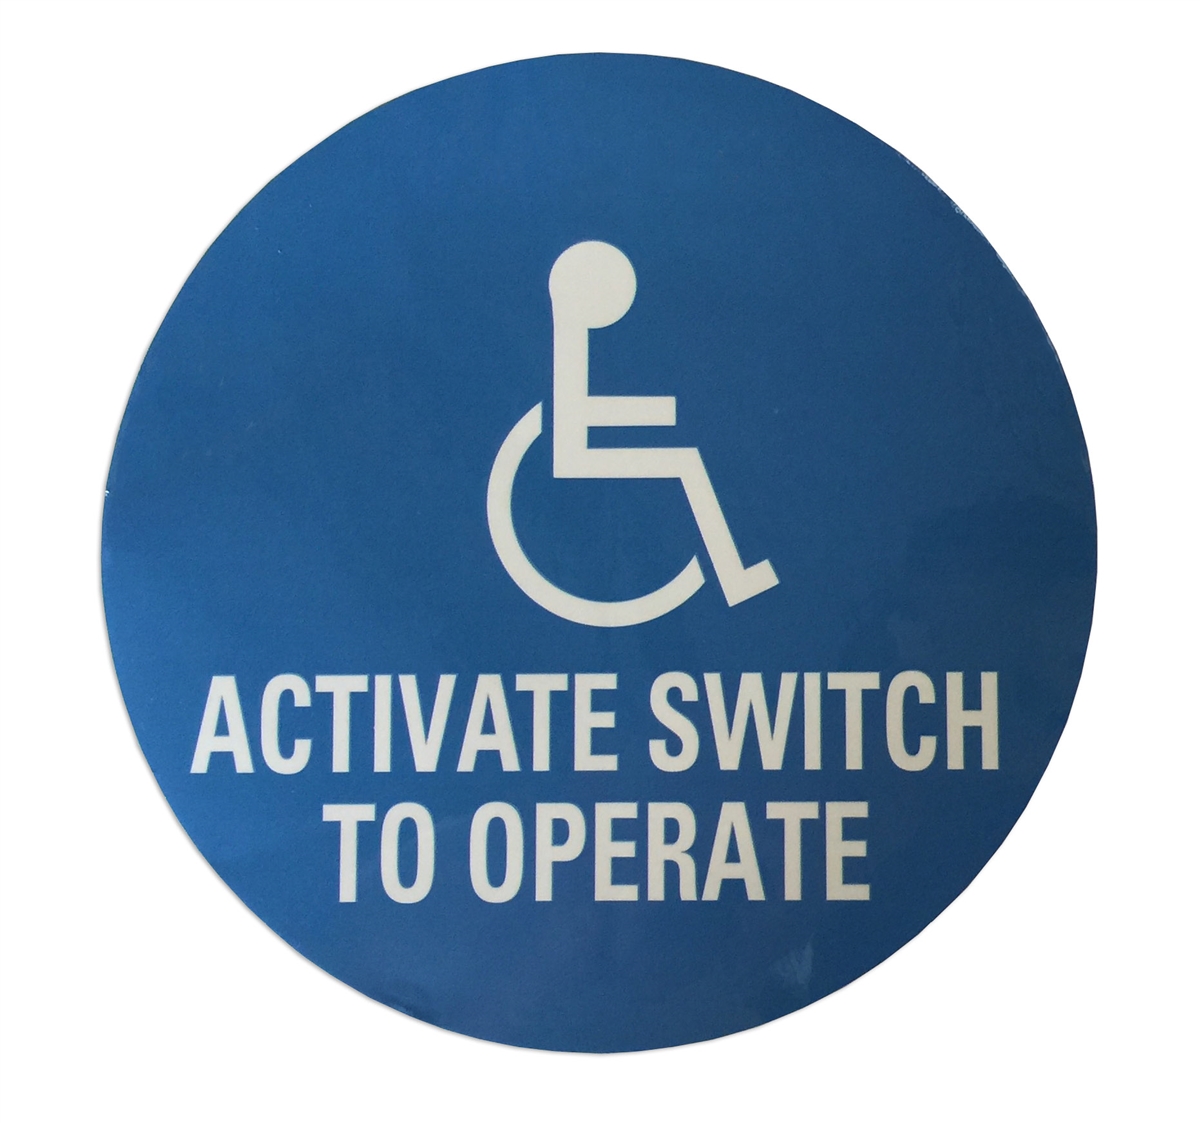 Autocollant handicapé - direction gauche - Sticker Communication